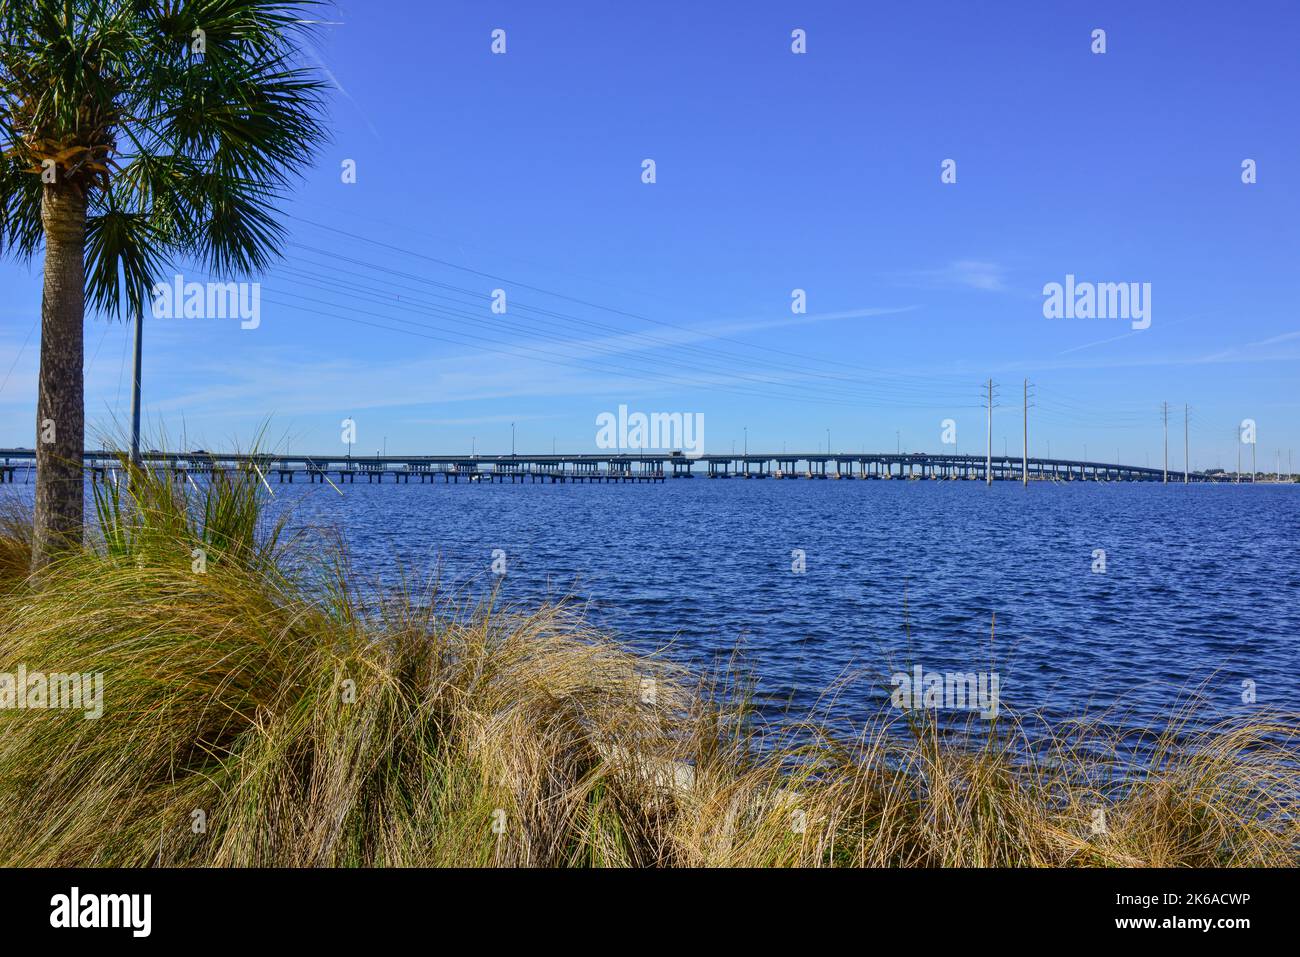 Vue à distance du pont Gilchrist traversant la rivière de la paix entre Port Charlotte et Punta Gorda, Floride encadrée par des palmiers et wiregrass à proximité Banque D'Images